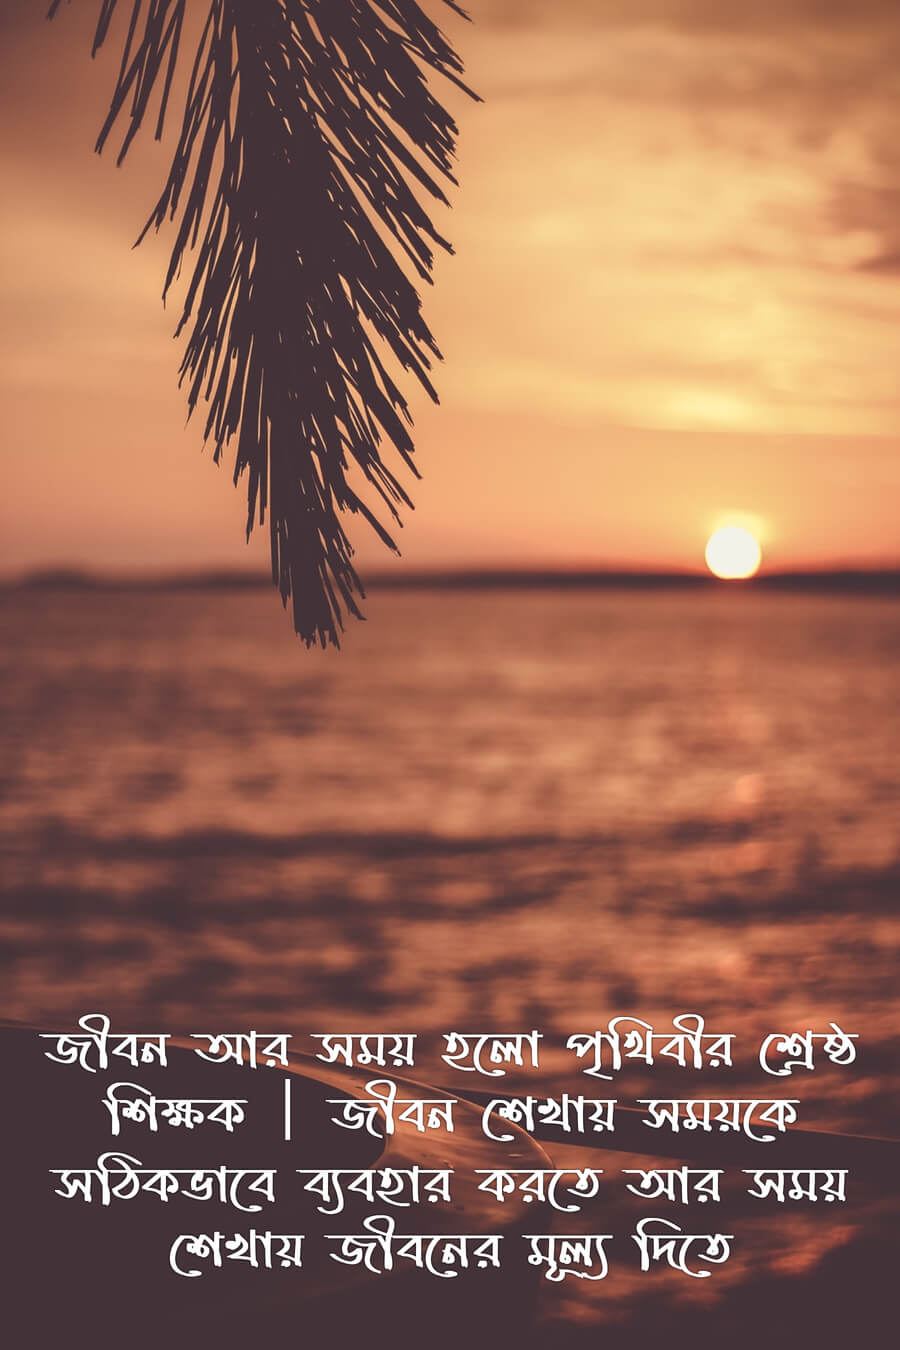 bengali version of abdul kalam's sayings